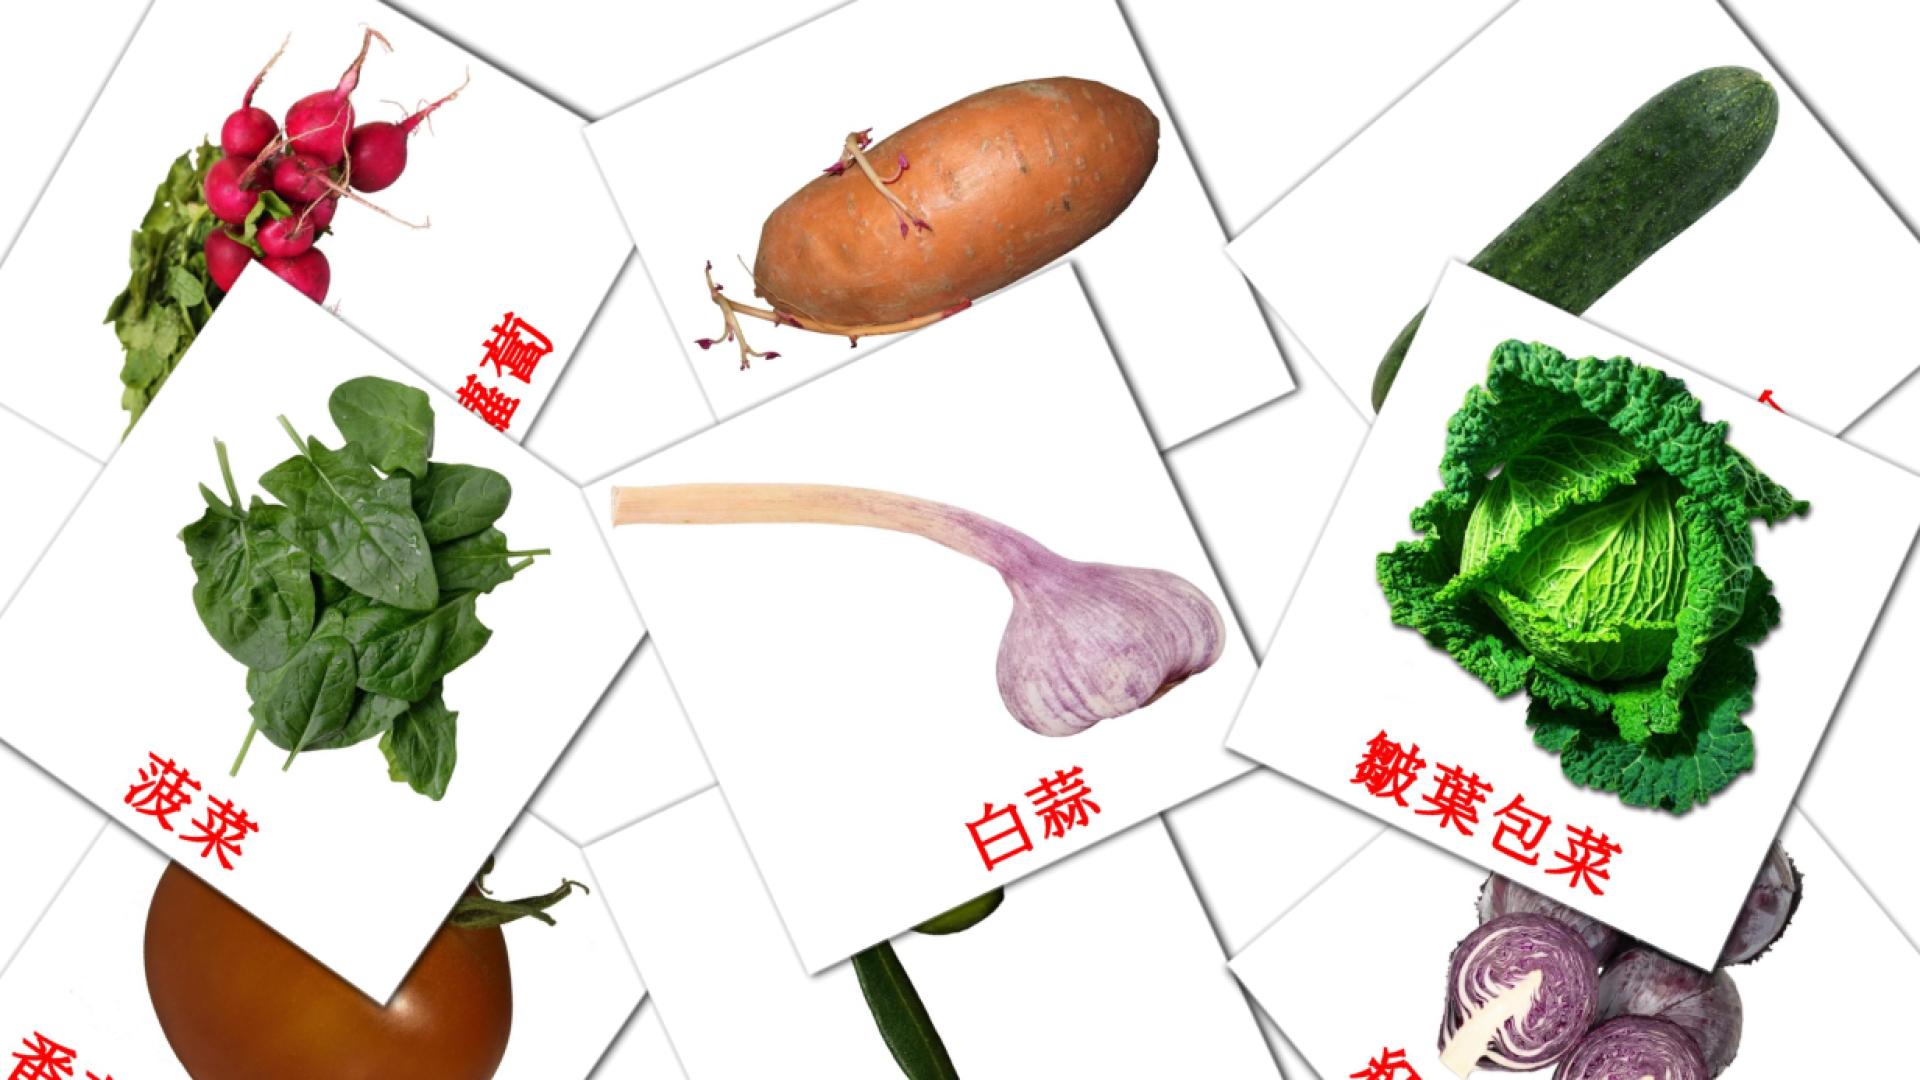 29 蔬菜 flashcards